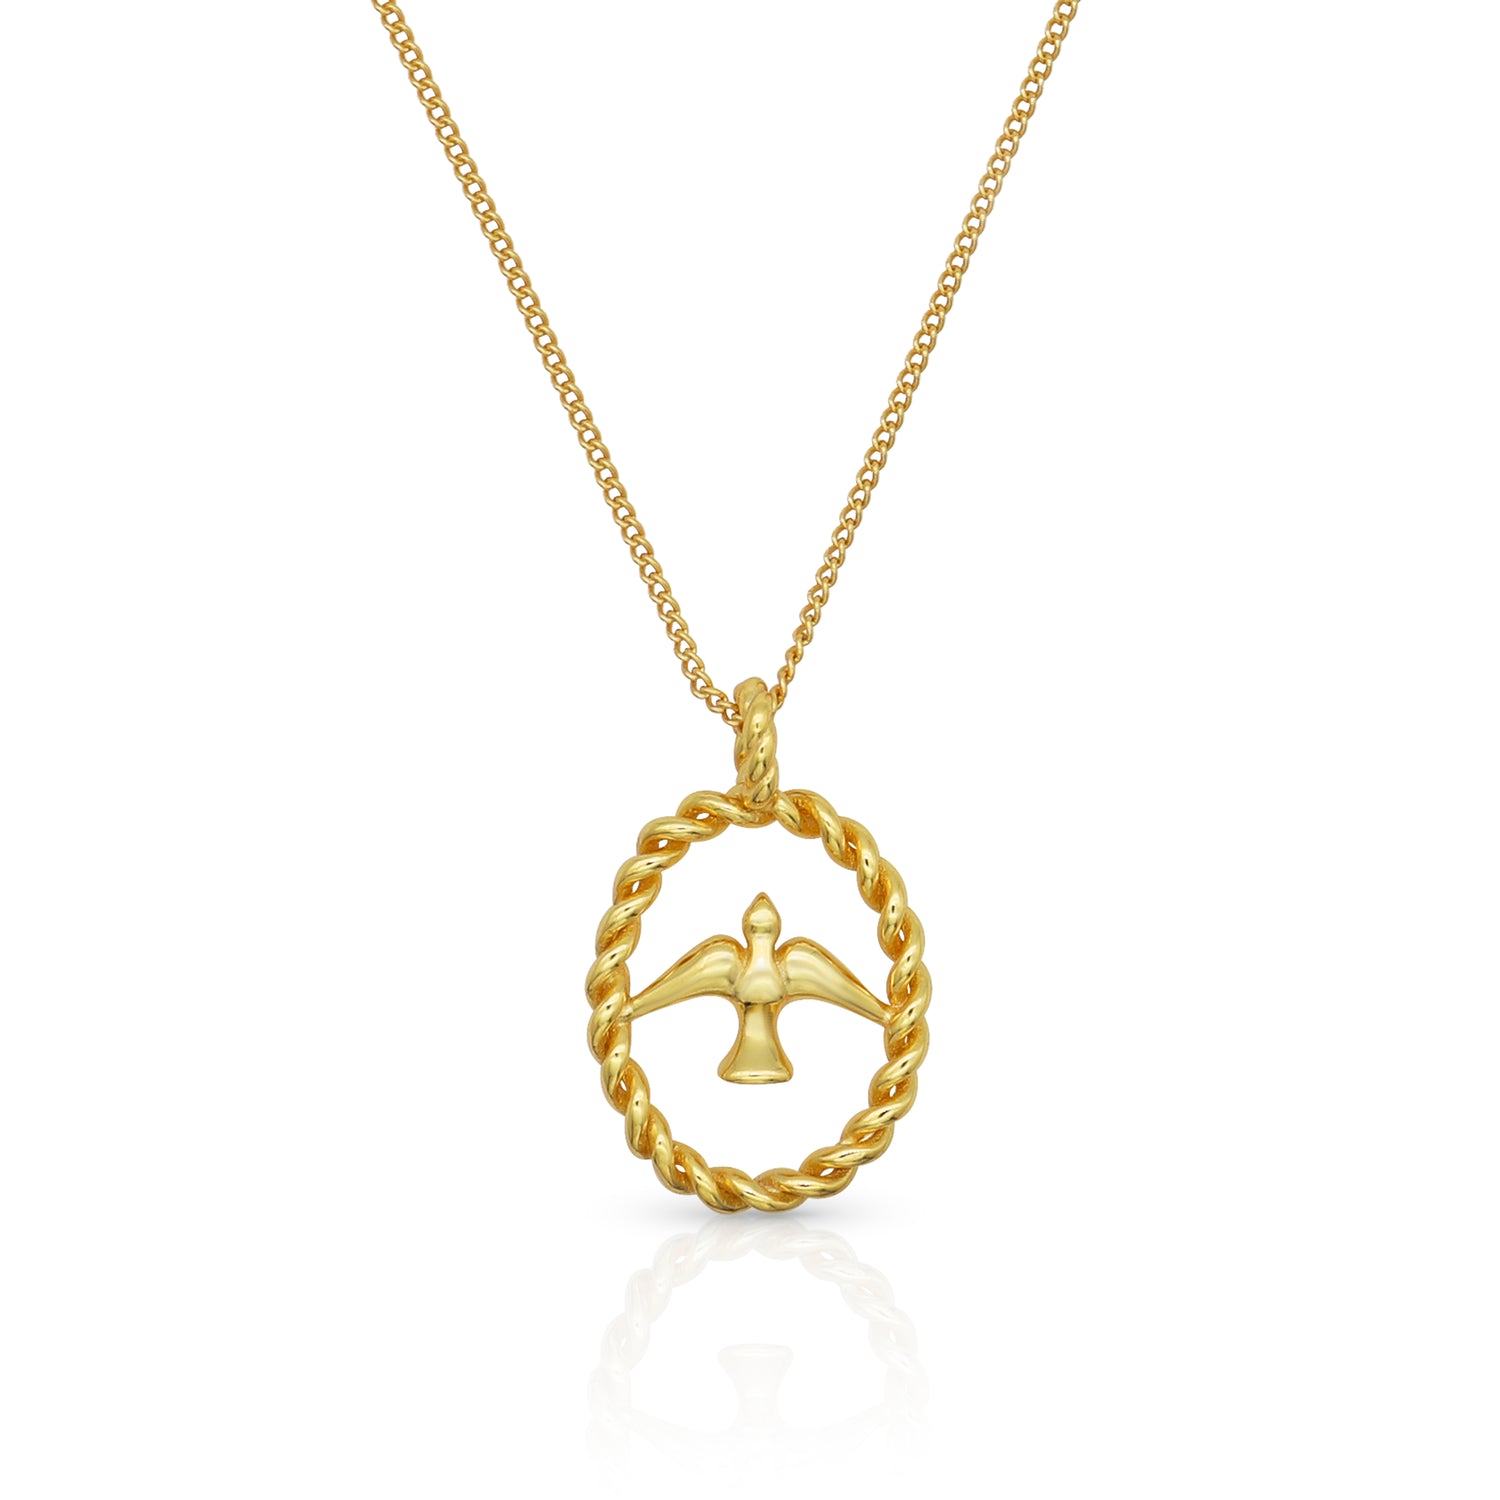 MADELYN GOLD NECKLACE | madelyn-gold-necklace | Necklace | Guerilla Choice